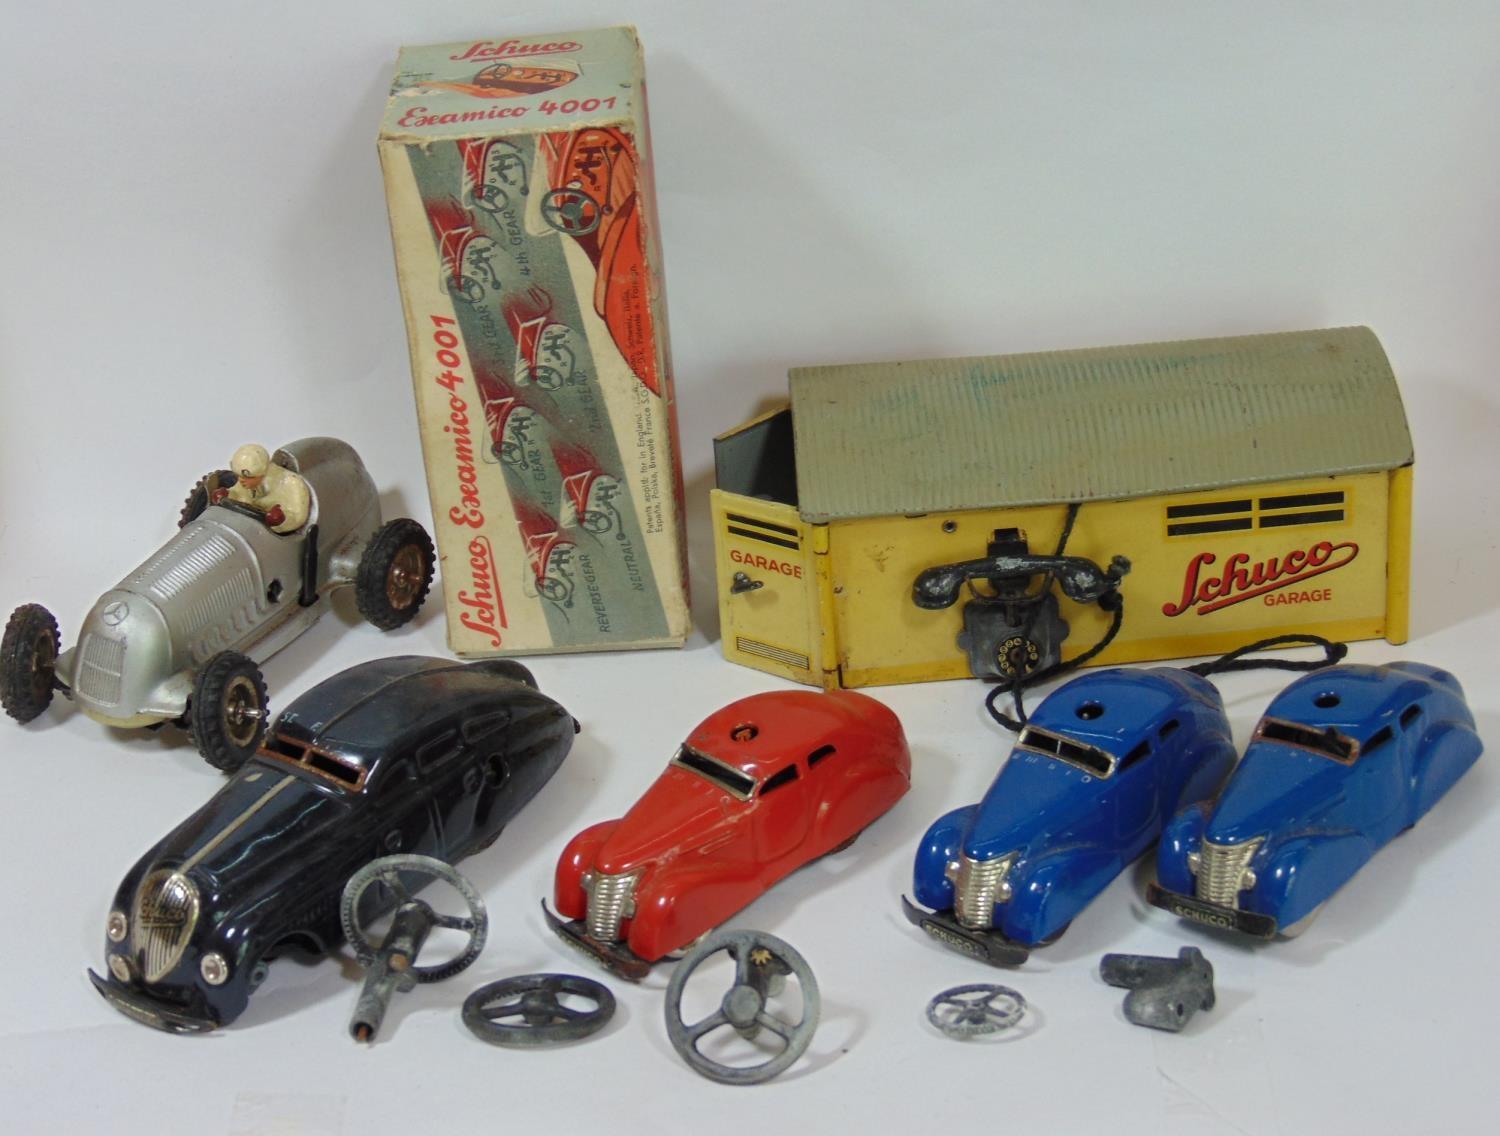 Collection of clockwork cars by Schuco and Gescha including a boxed Schuco Examico 4001, a Schuco